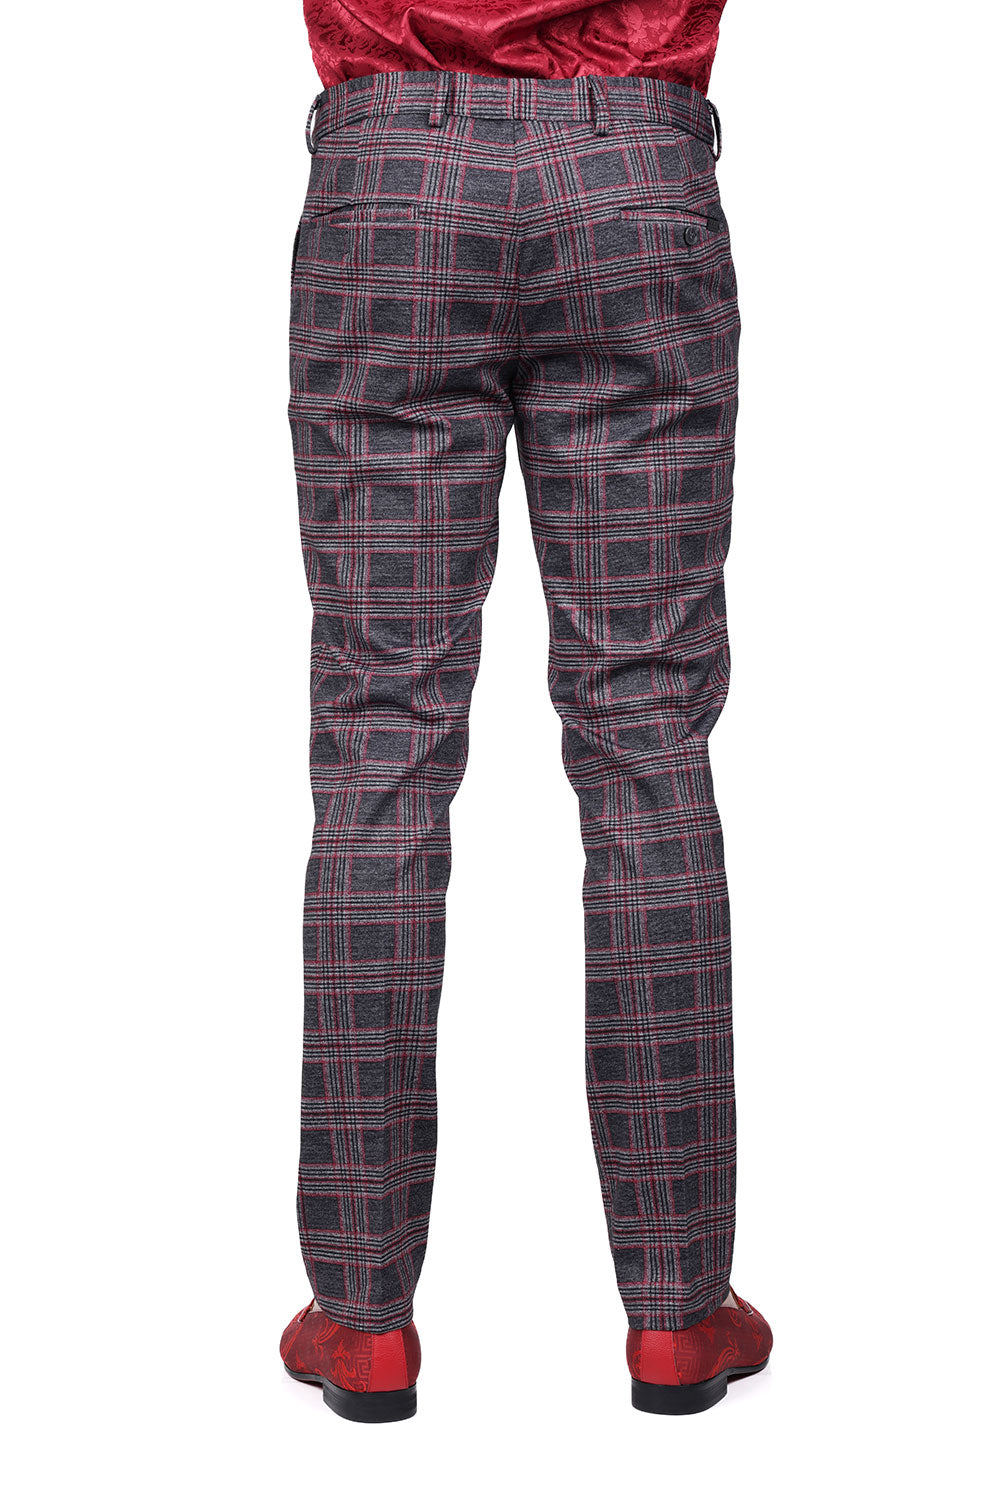 BARABAS men's checkered plaid grey and pink chino pants CP157